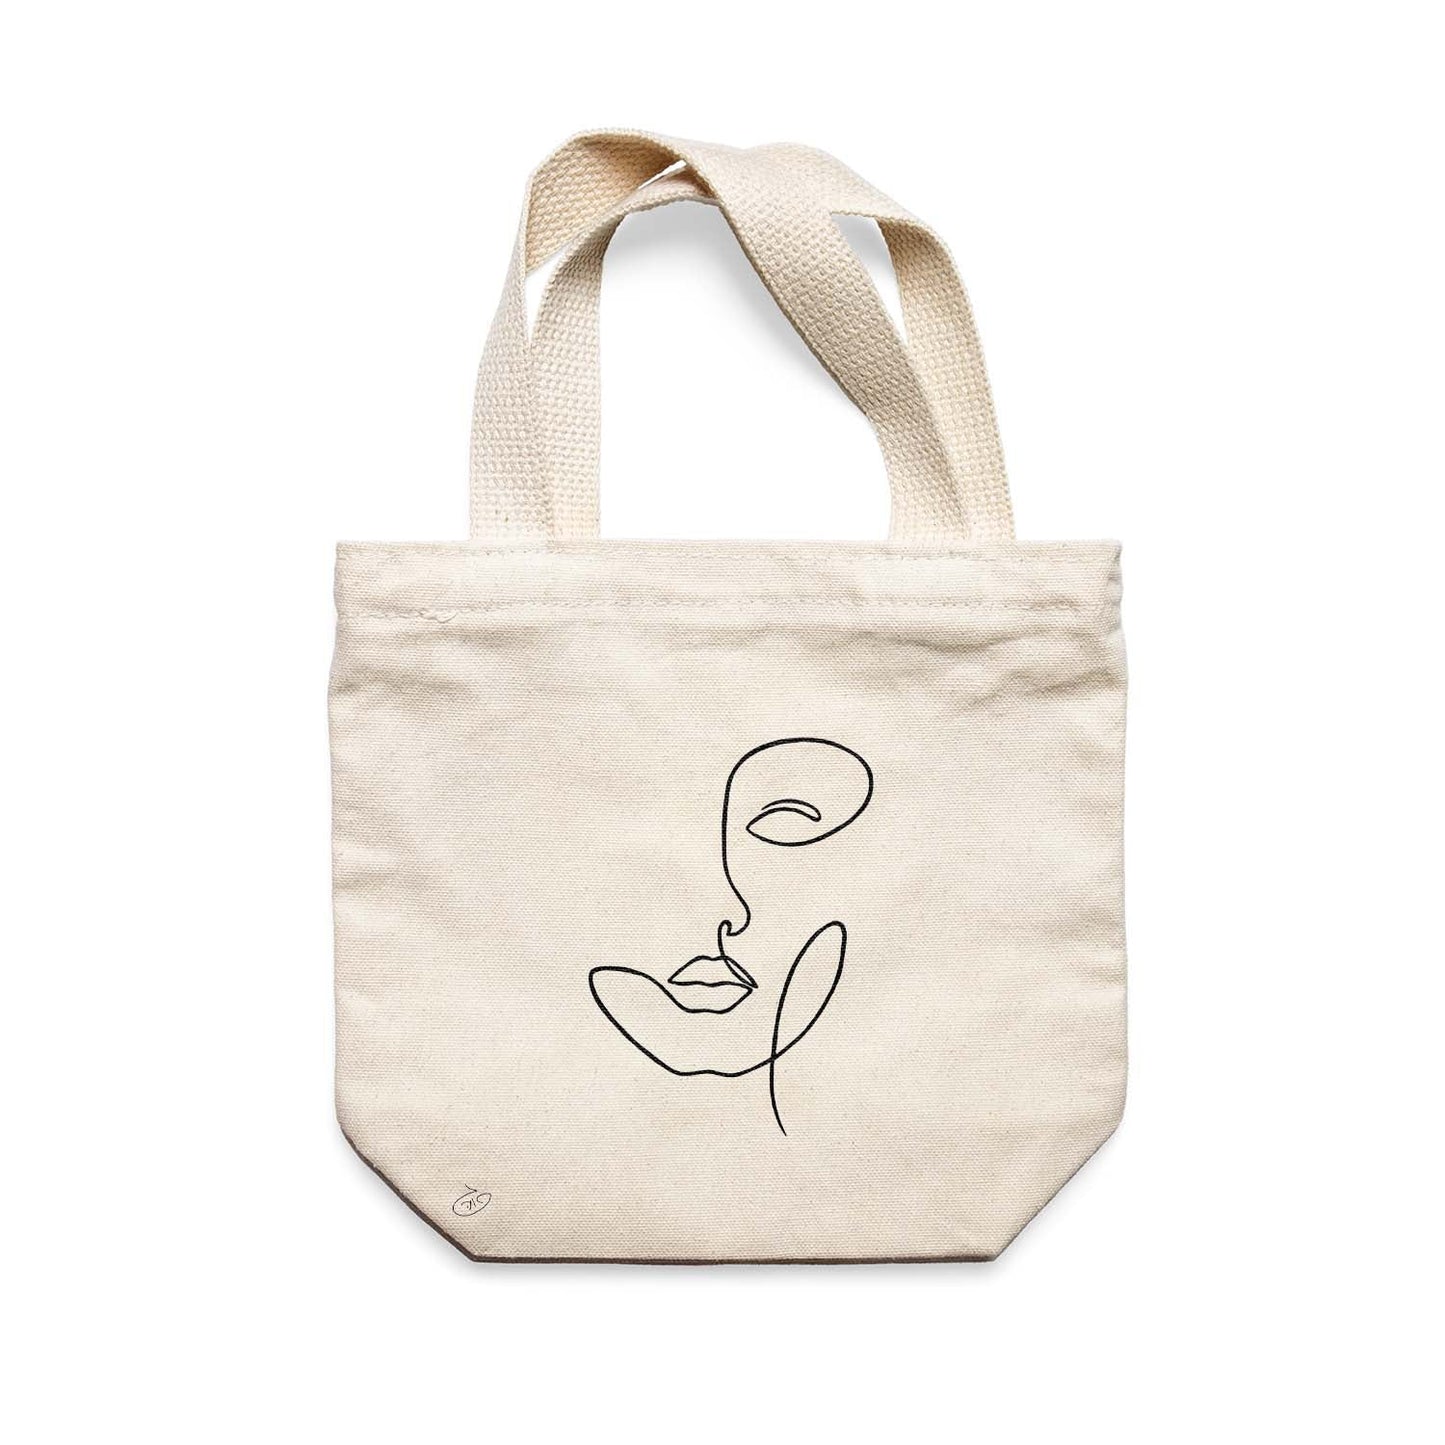 תיק צד לנשים וגברים מבד 100% כותנה טבעית בעיצוב One Line - Sundara Tote Bag מציור מקורי של גאיה